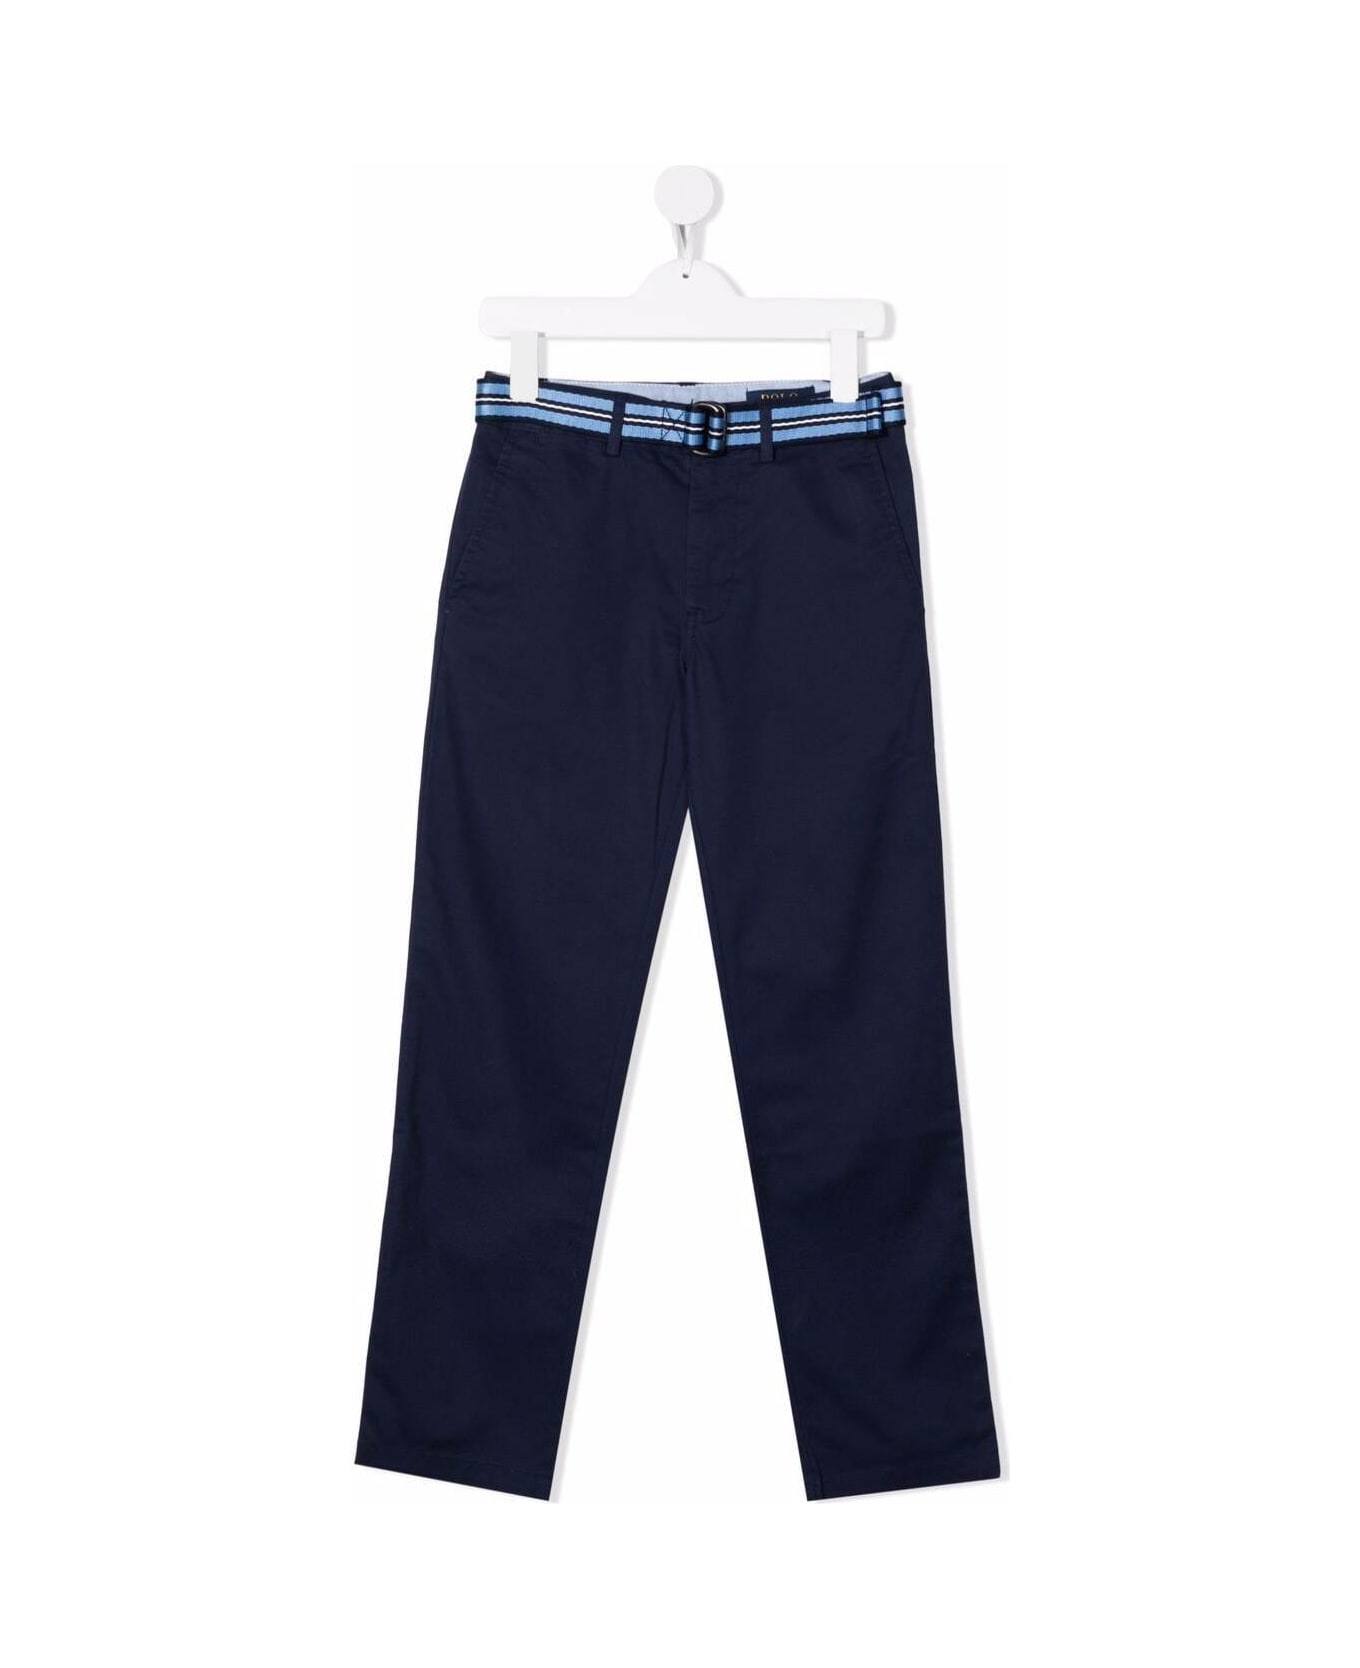 Ralph Lauren Polo Ralph Lauren Kids Boy's Blue Cotton Trousers With Belt - Navy